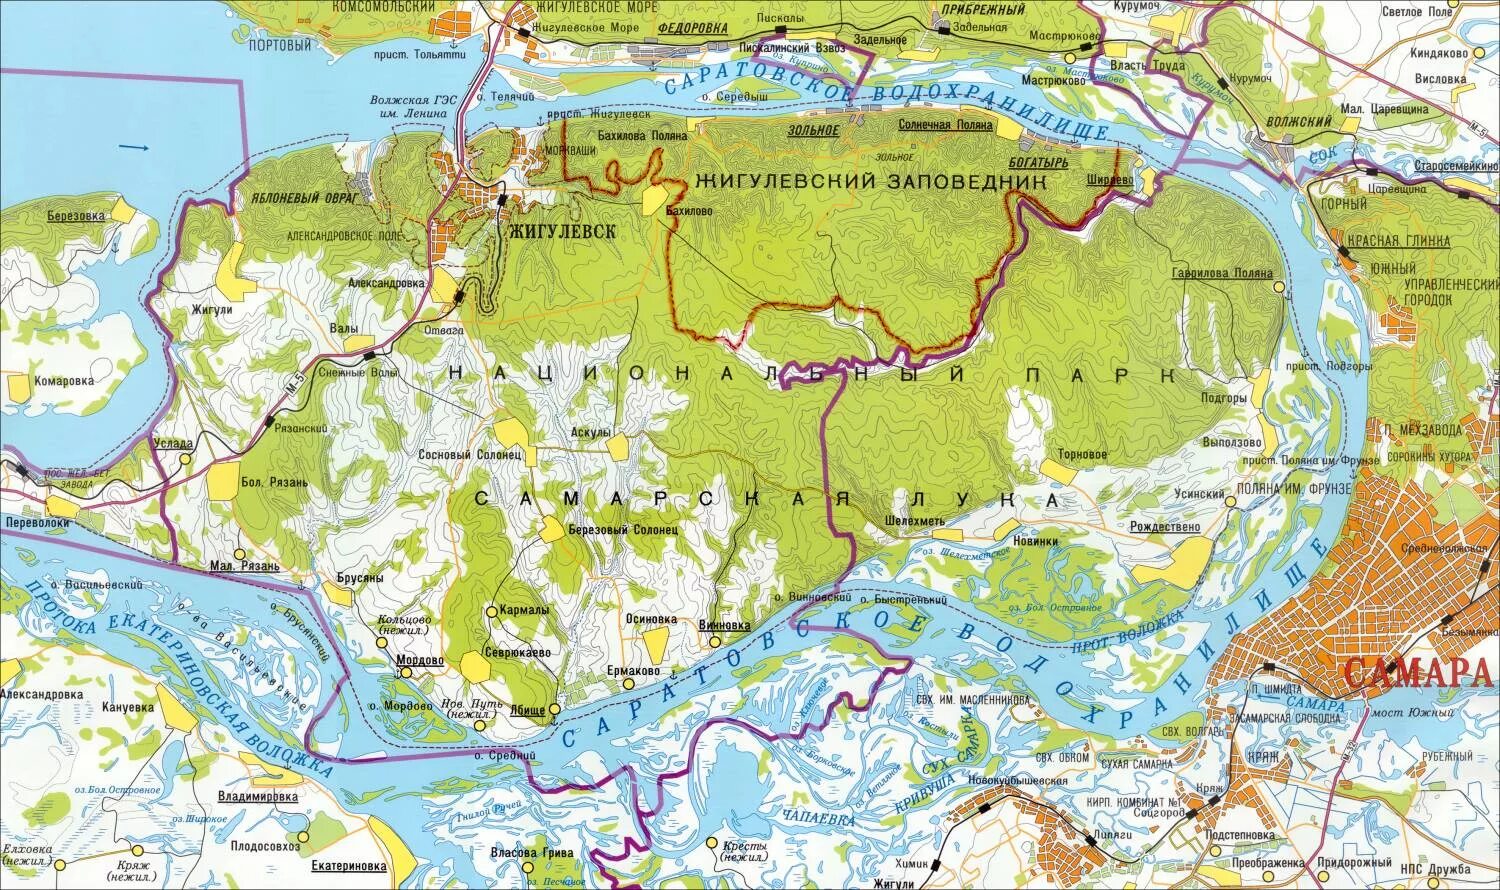 Местоположение самары. Карта Жигулевского заповедника и Самарской Луки.